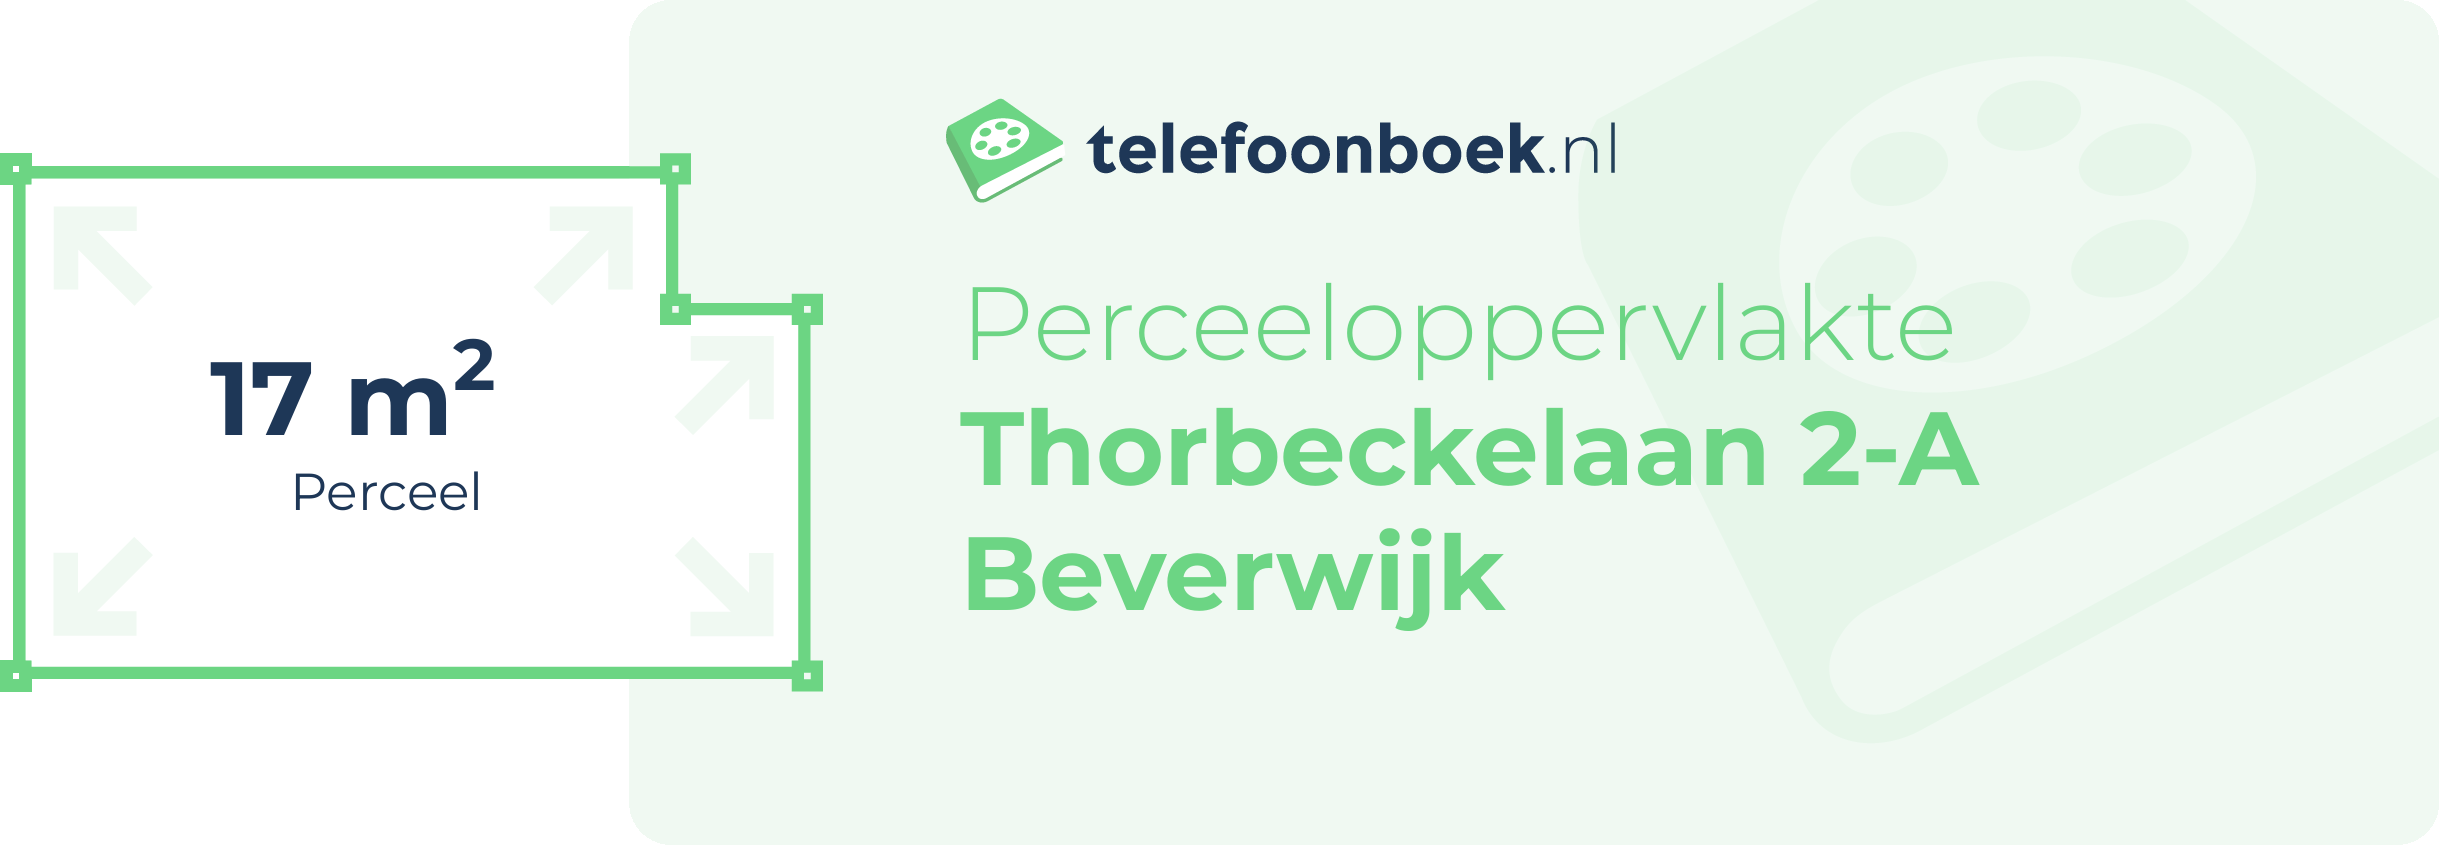 Perceeloppervlakte Thorbeckelaan 2-A Beverwijk